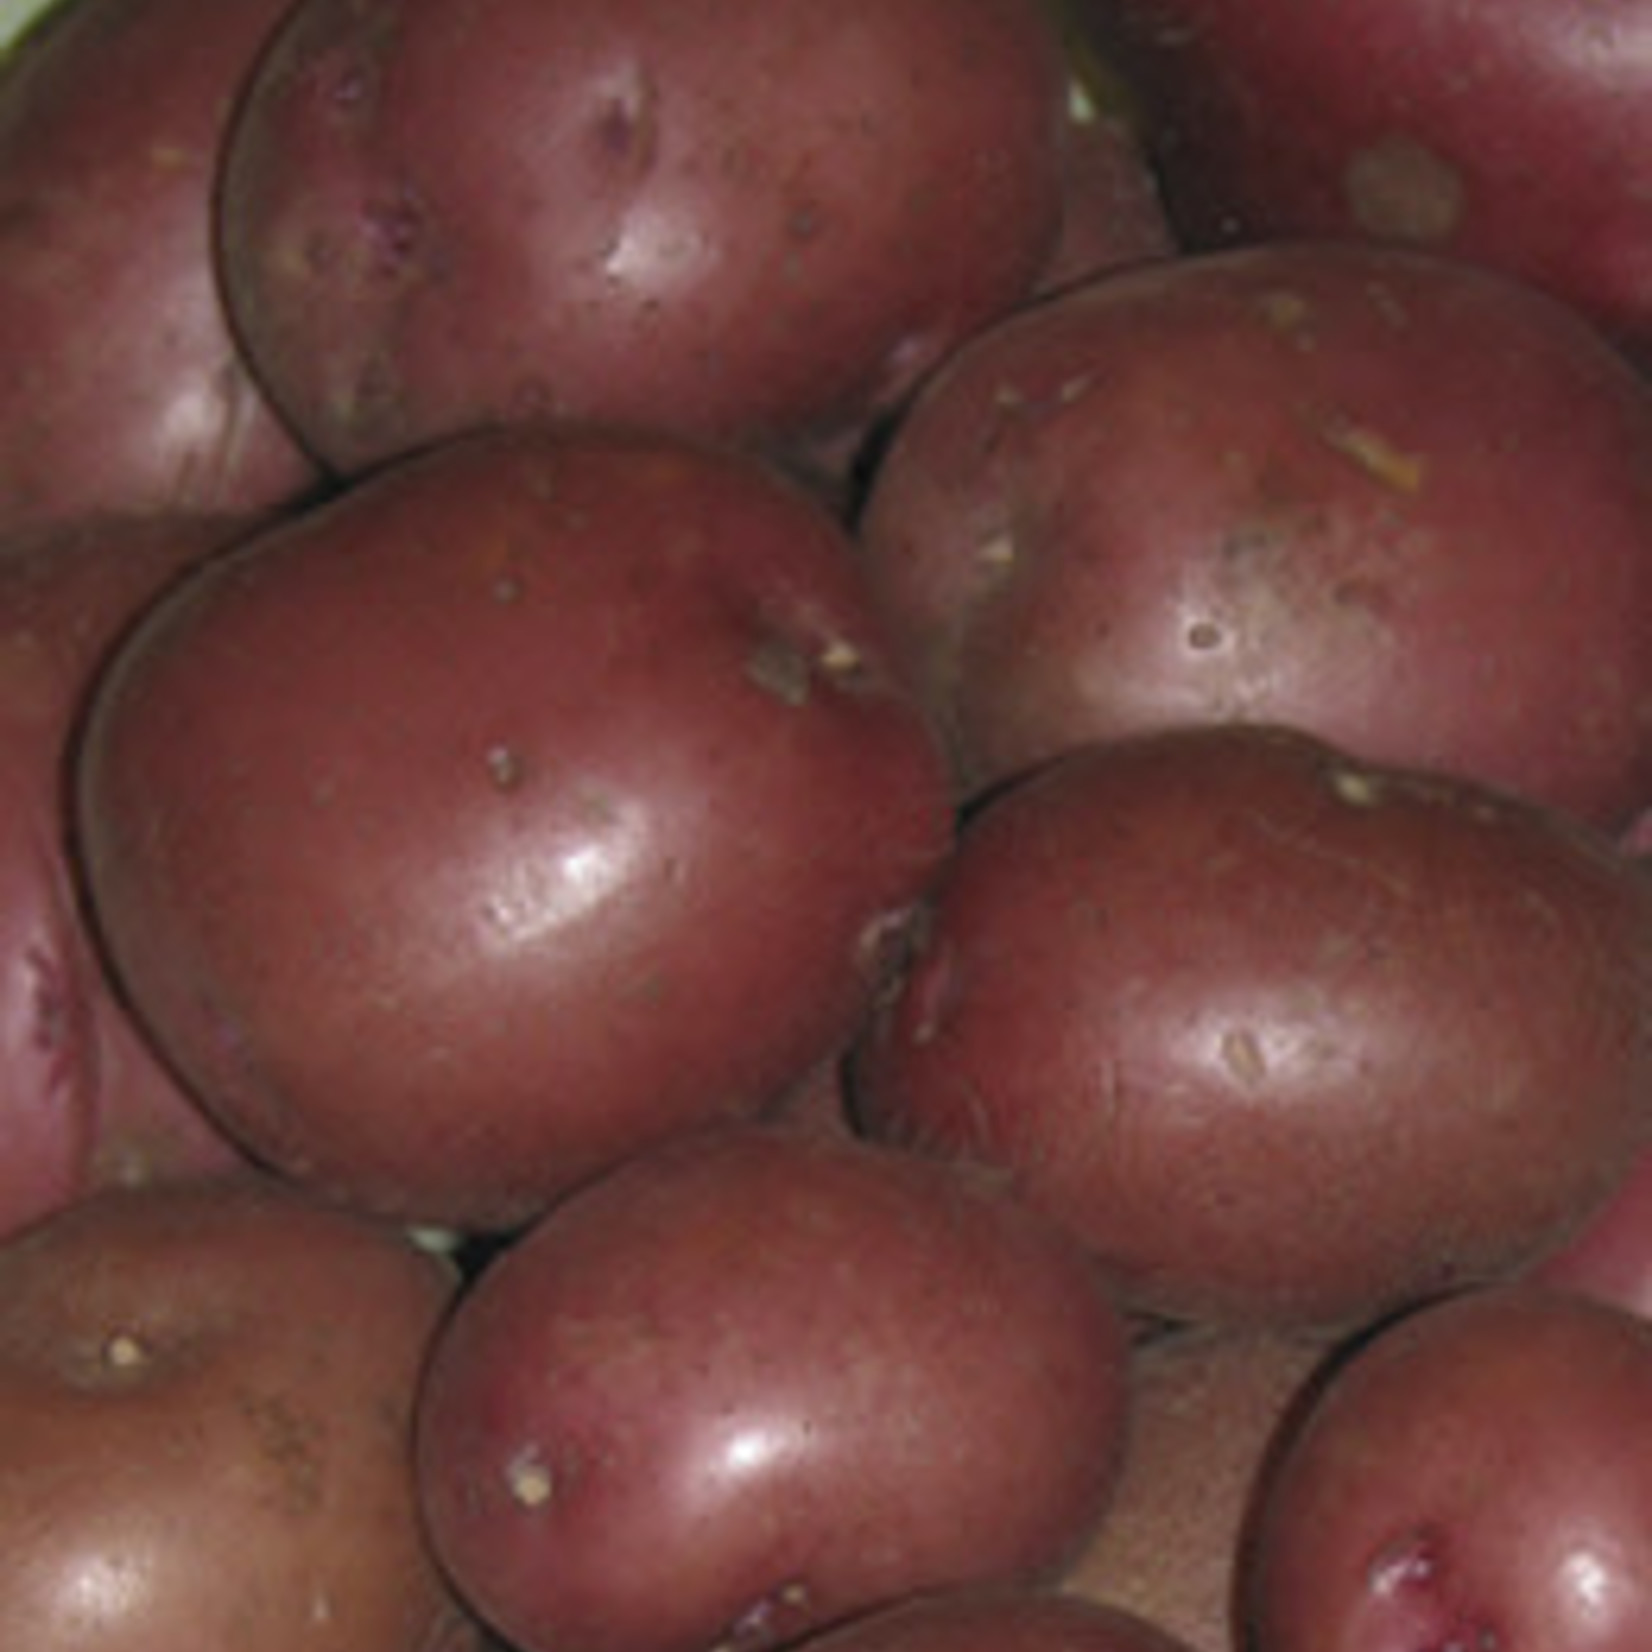 Van Noort Red Viking Potato- Seed  2Kg